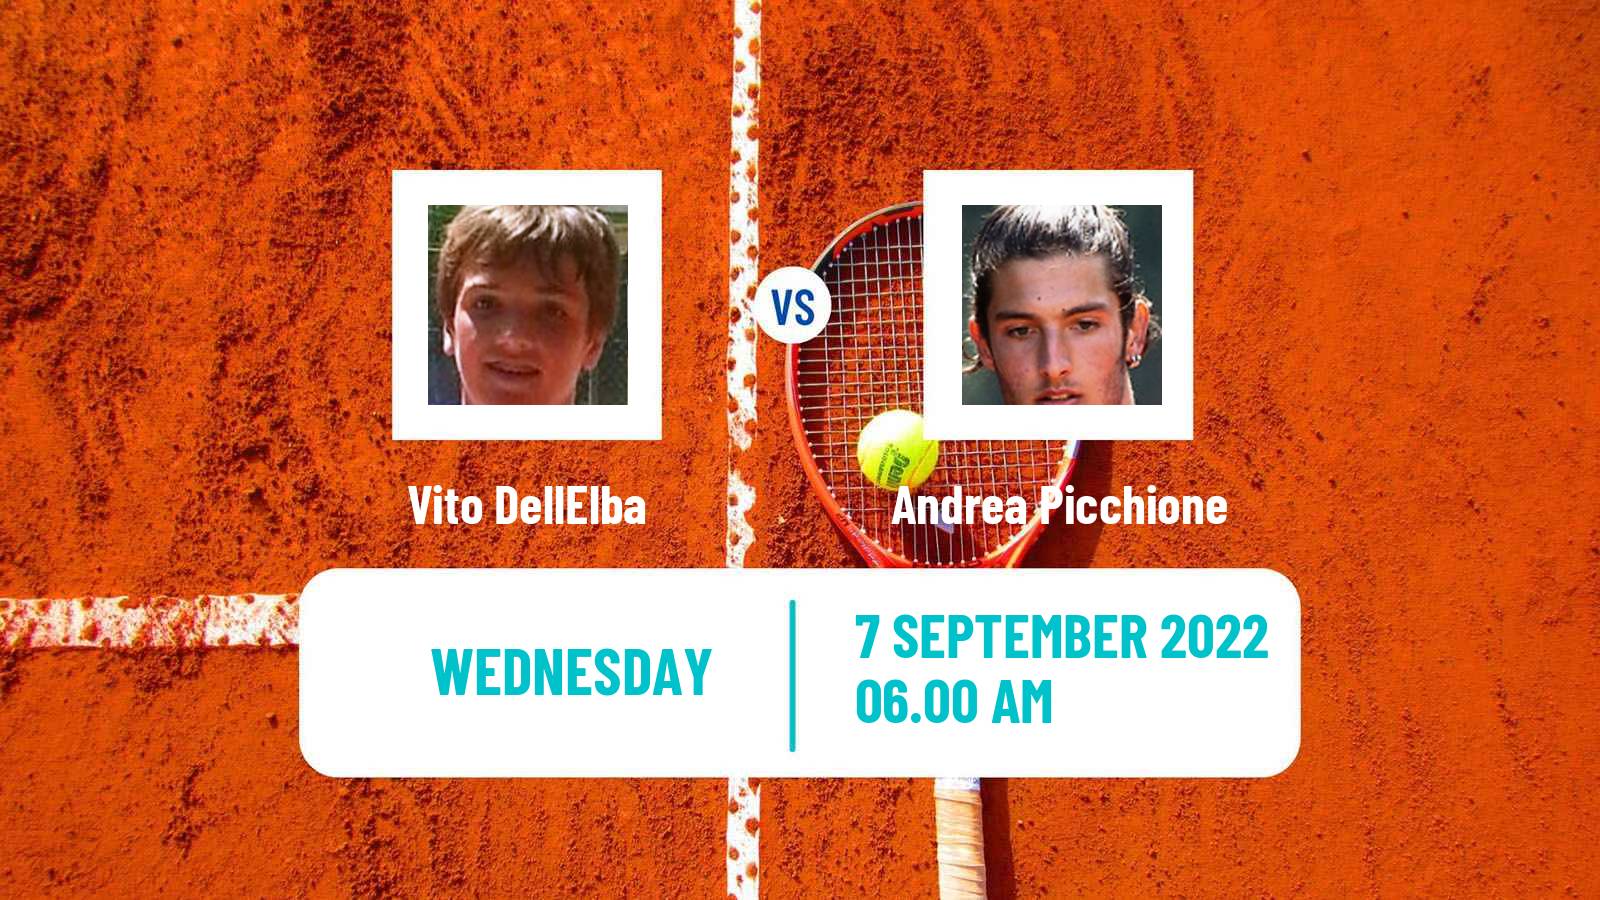 Tennis ITF Tournaments Vito DellElba - Andrea Picchione